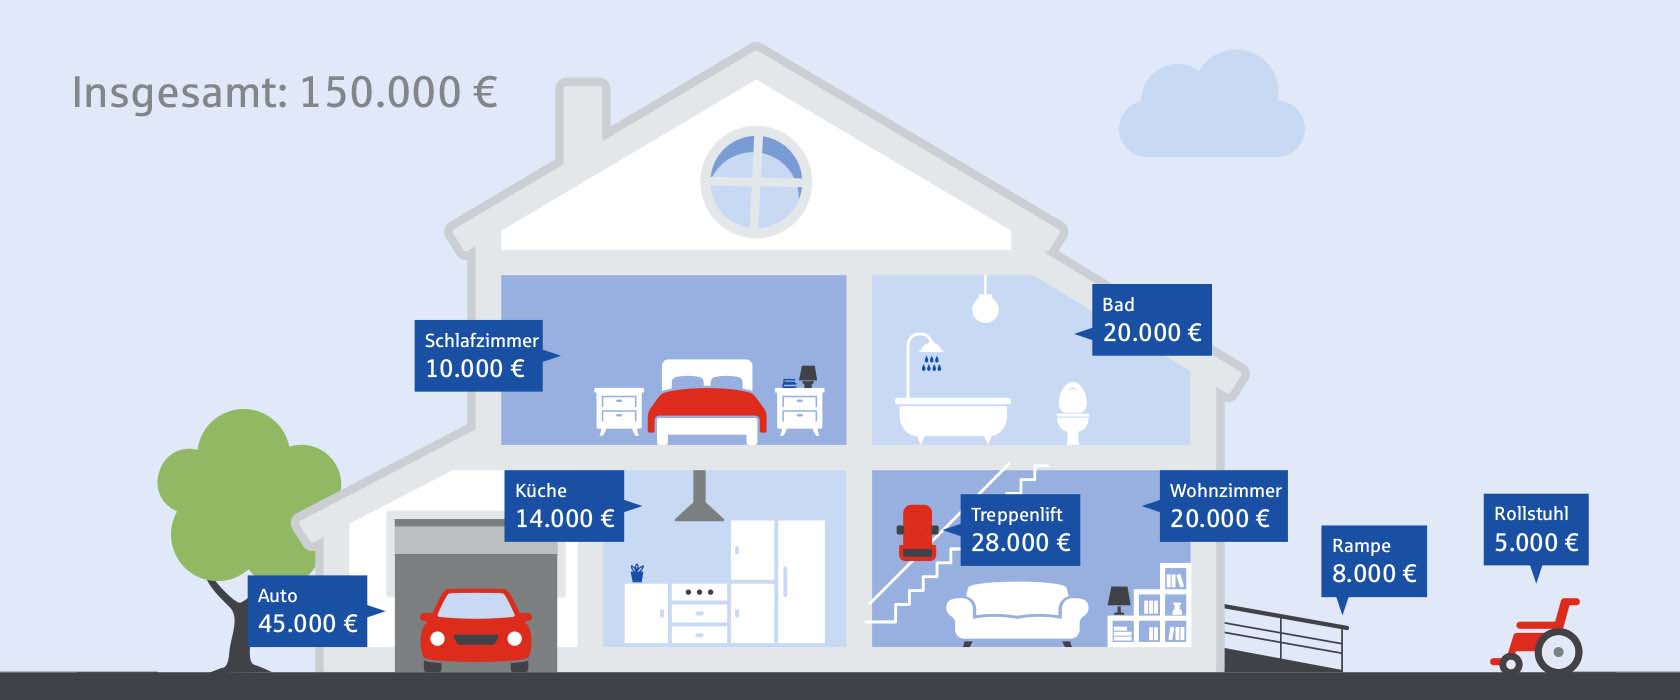 Unfallversicherung: Infografik zu den Anschaffungskosten für ein barrierefreies Leben mit verschiedenen Preisbeispielen.